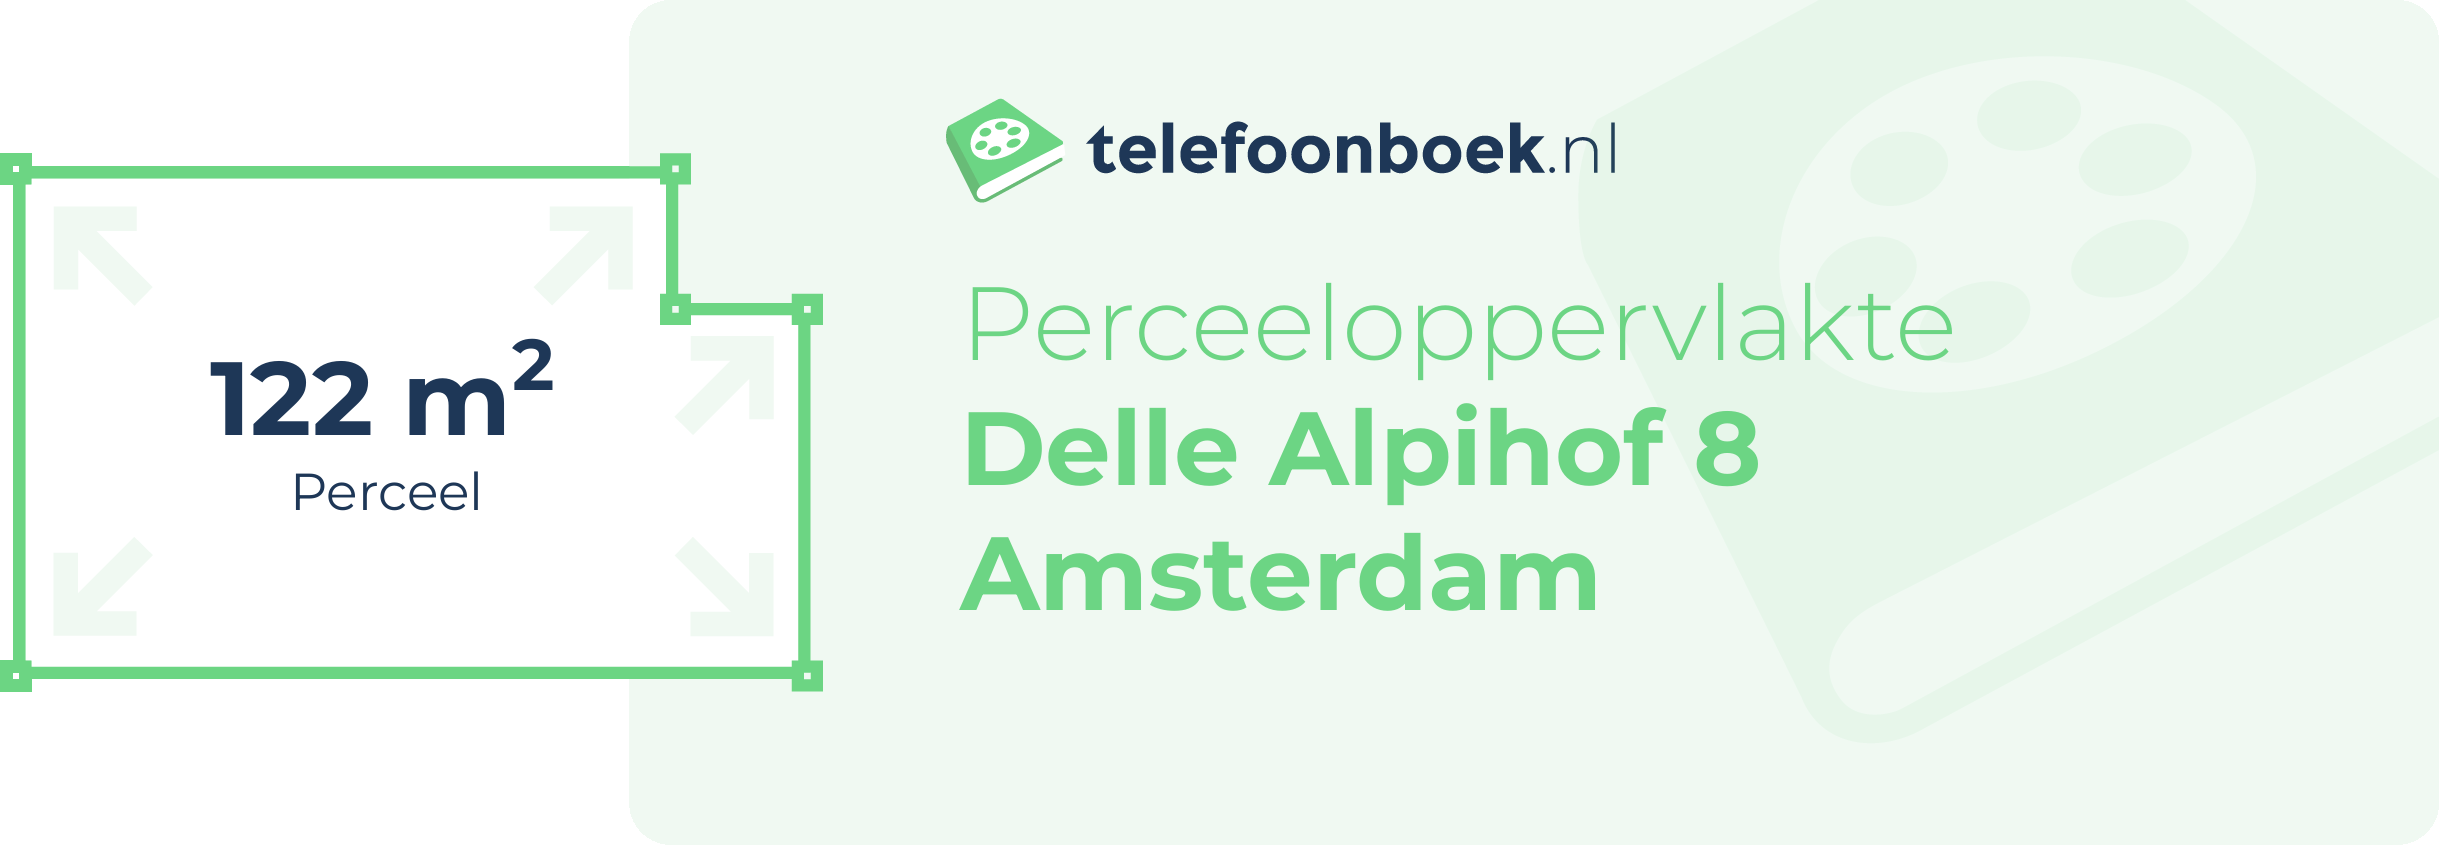 Perceeloppervlakte Delle Alpihof 8 Amsterdam